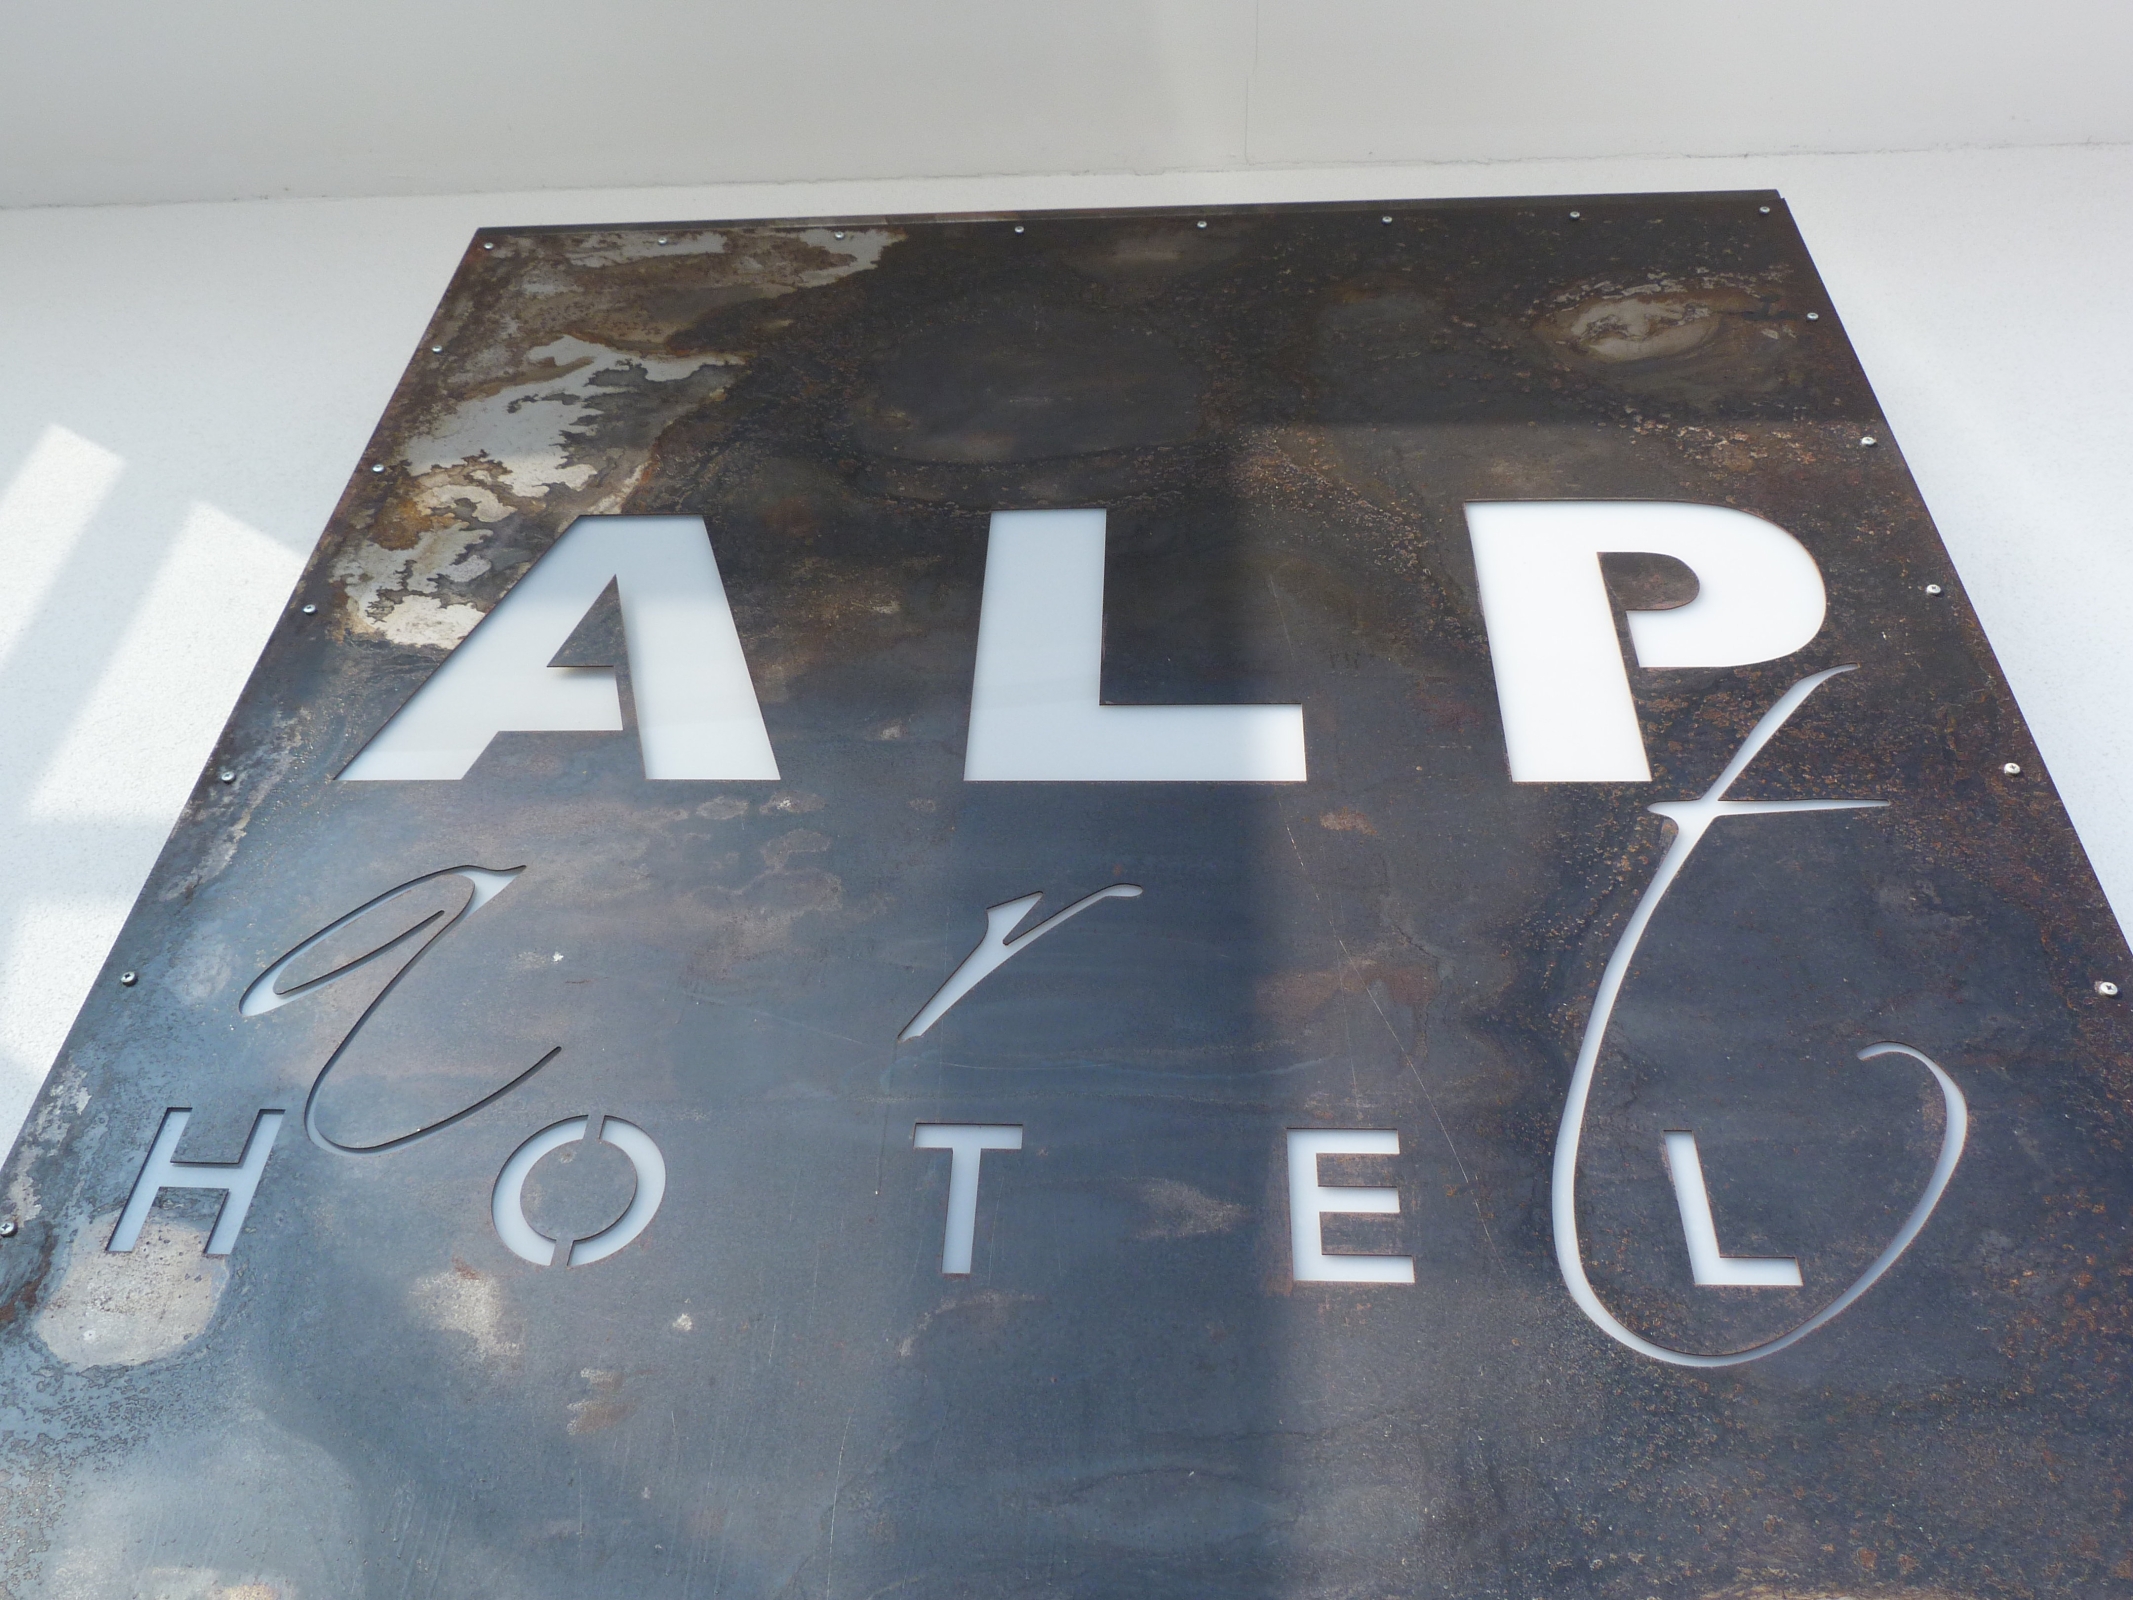 Alp Art Hotel (Götzens)